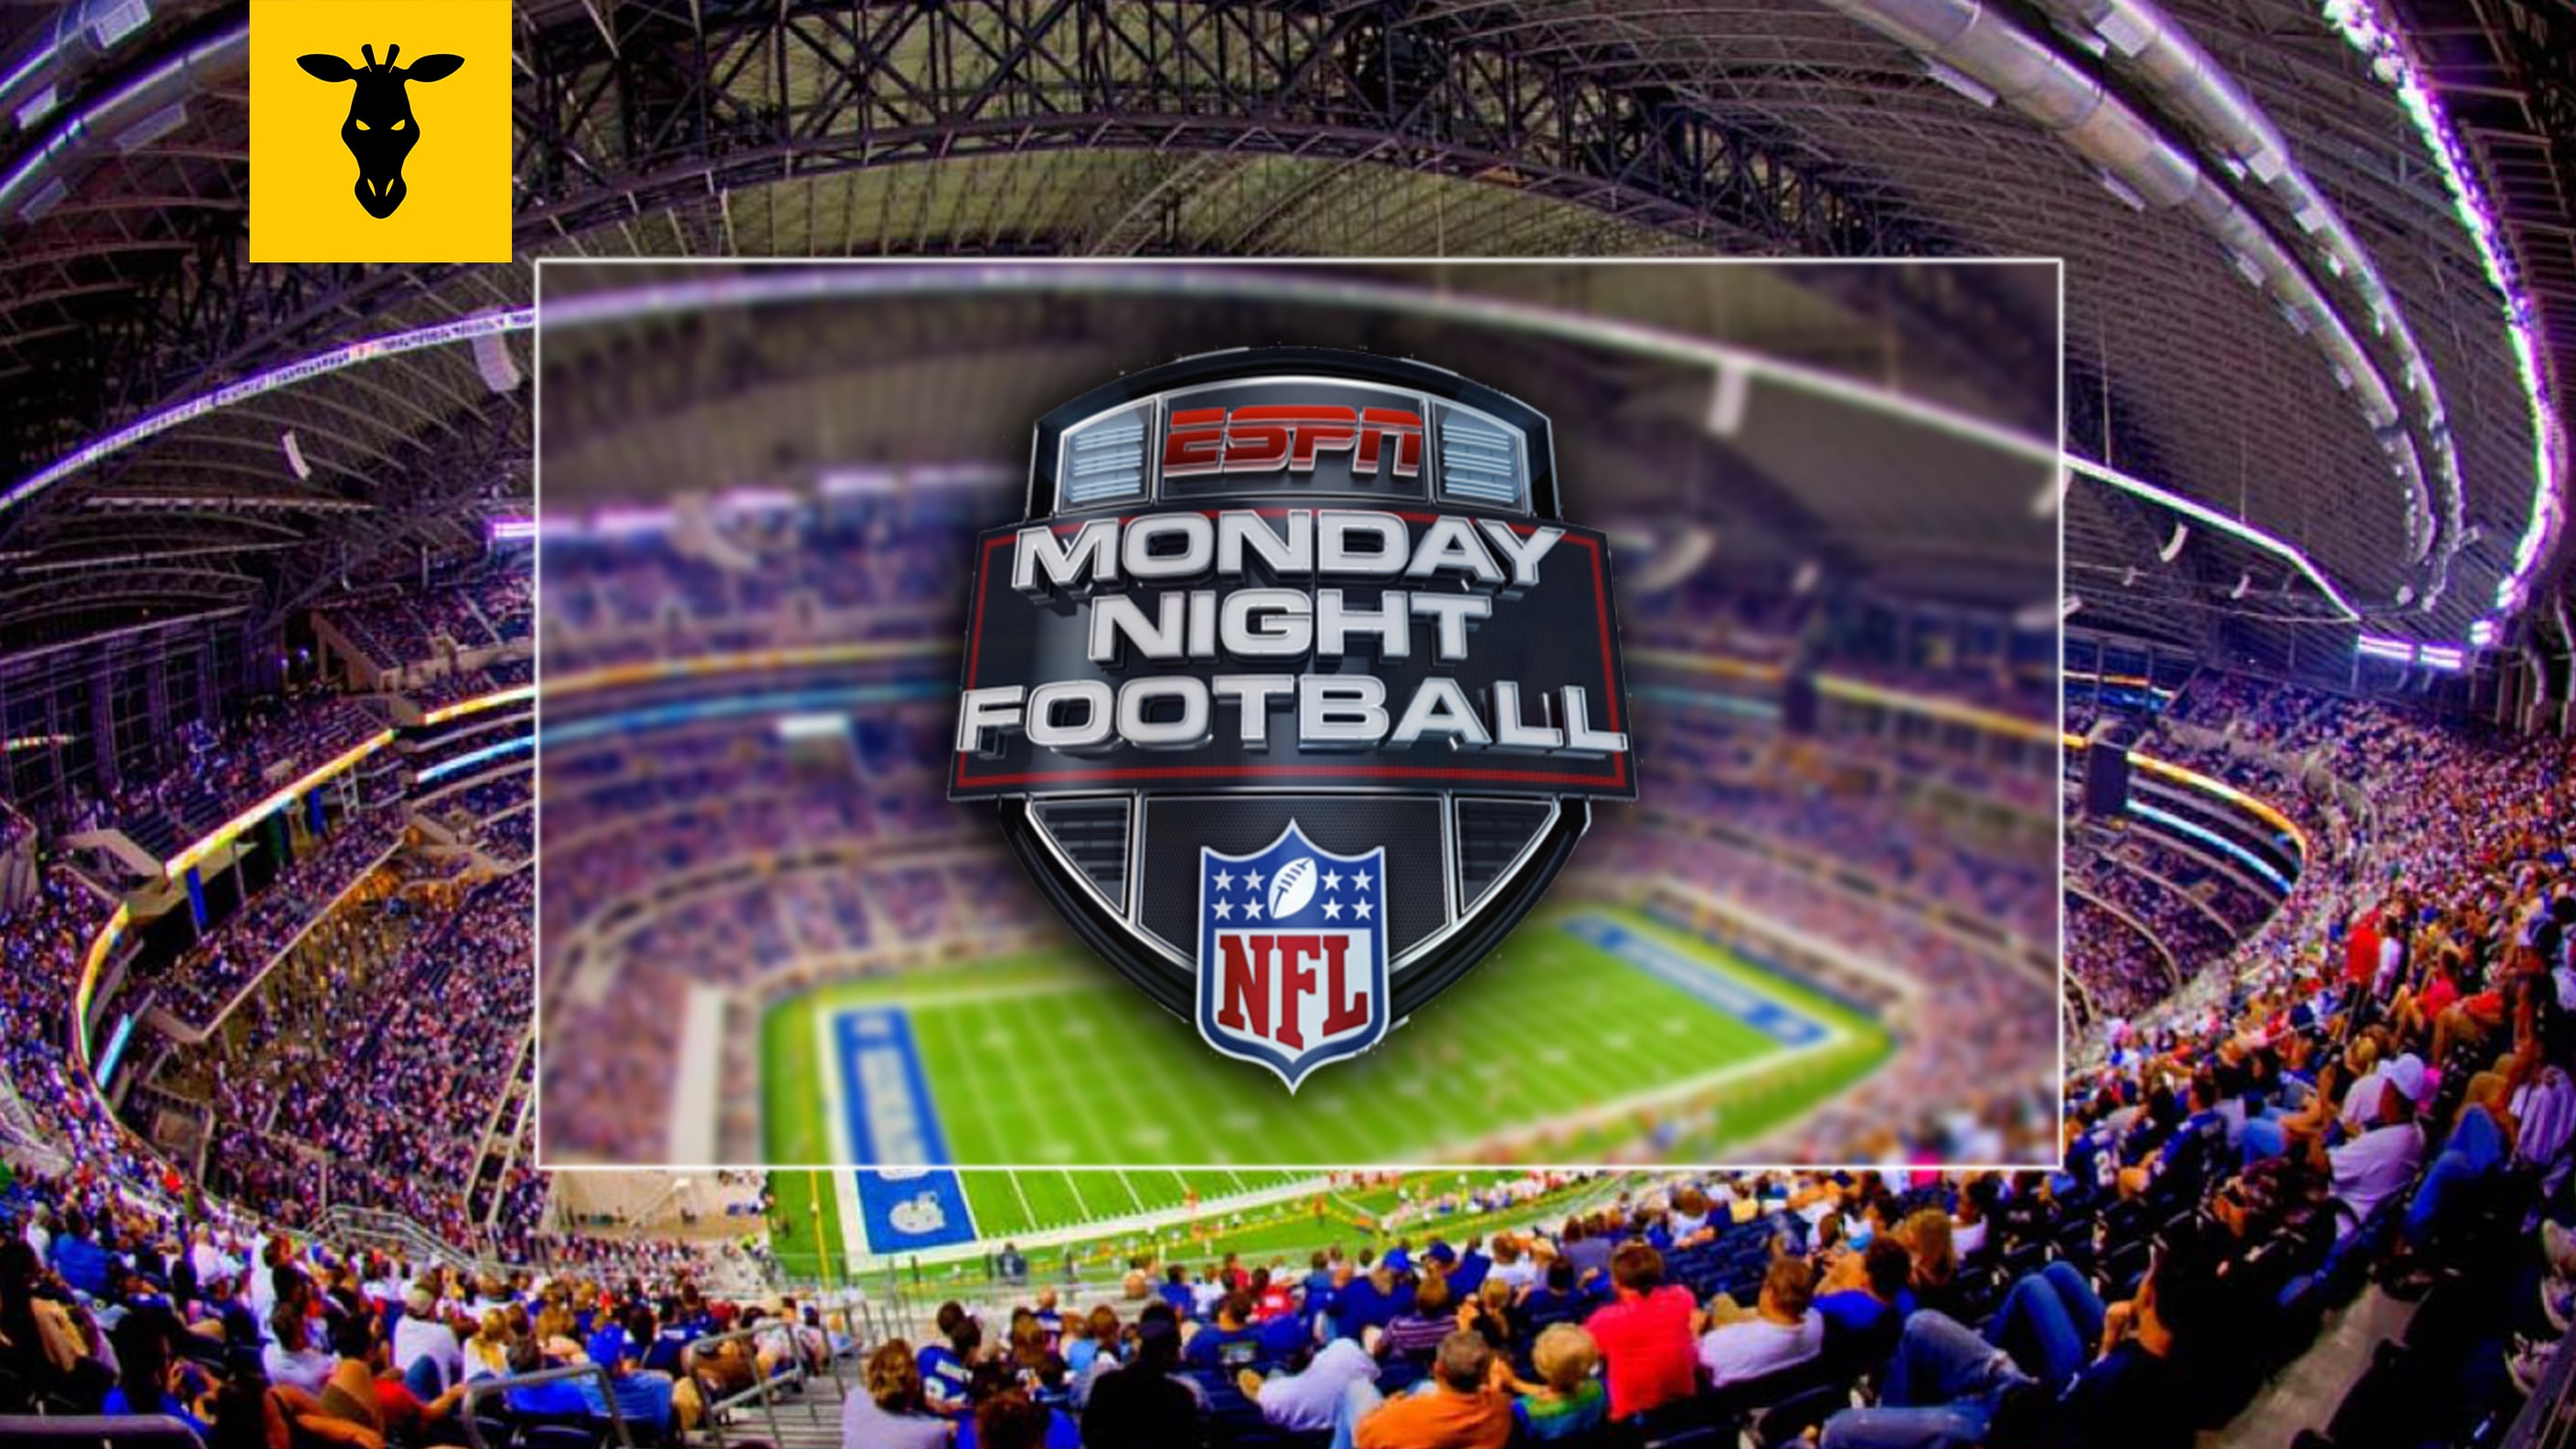 ESPN Monday Night Football 2020-21 on Vimeo